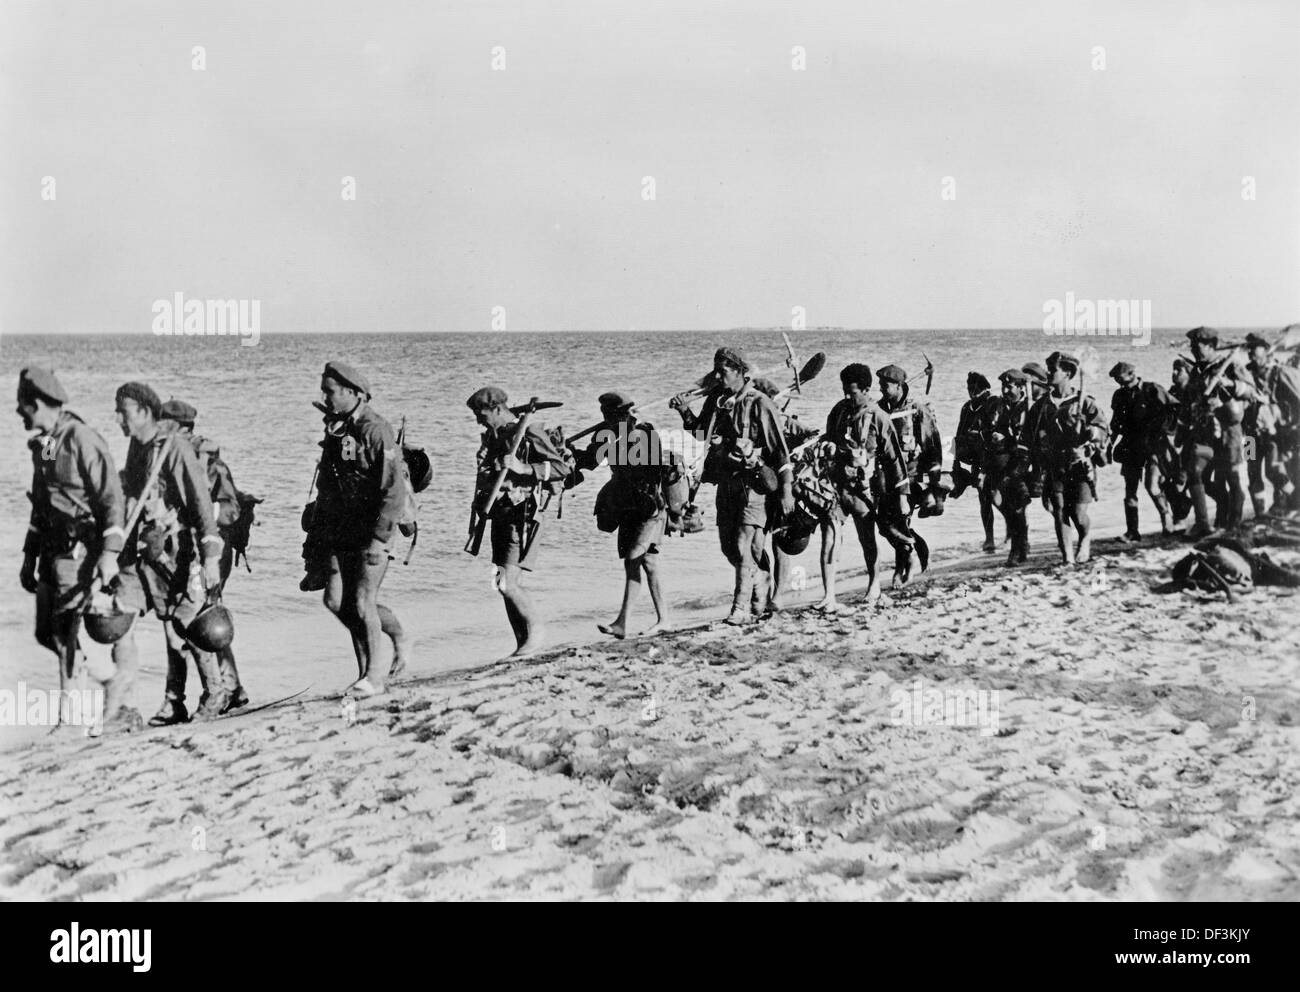 L'image de la propagande nazie! Dépeint les soldats italiens du bataillon de mer 'son Marco' marchant sur la mer près de Tobruk en Libye, publié le 3 octobre 1942. Fotoarchiv für Zeitgeschichte Banque D'Images